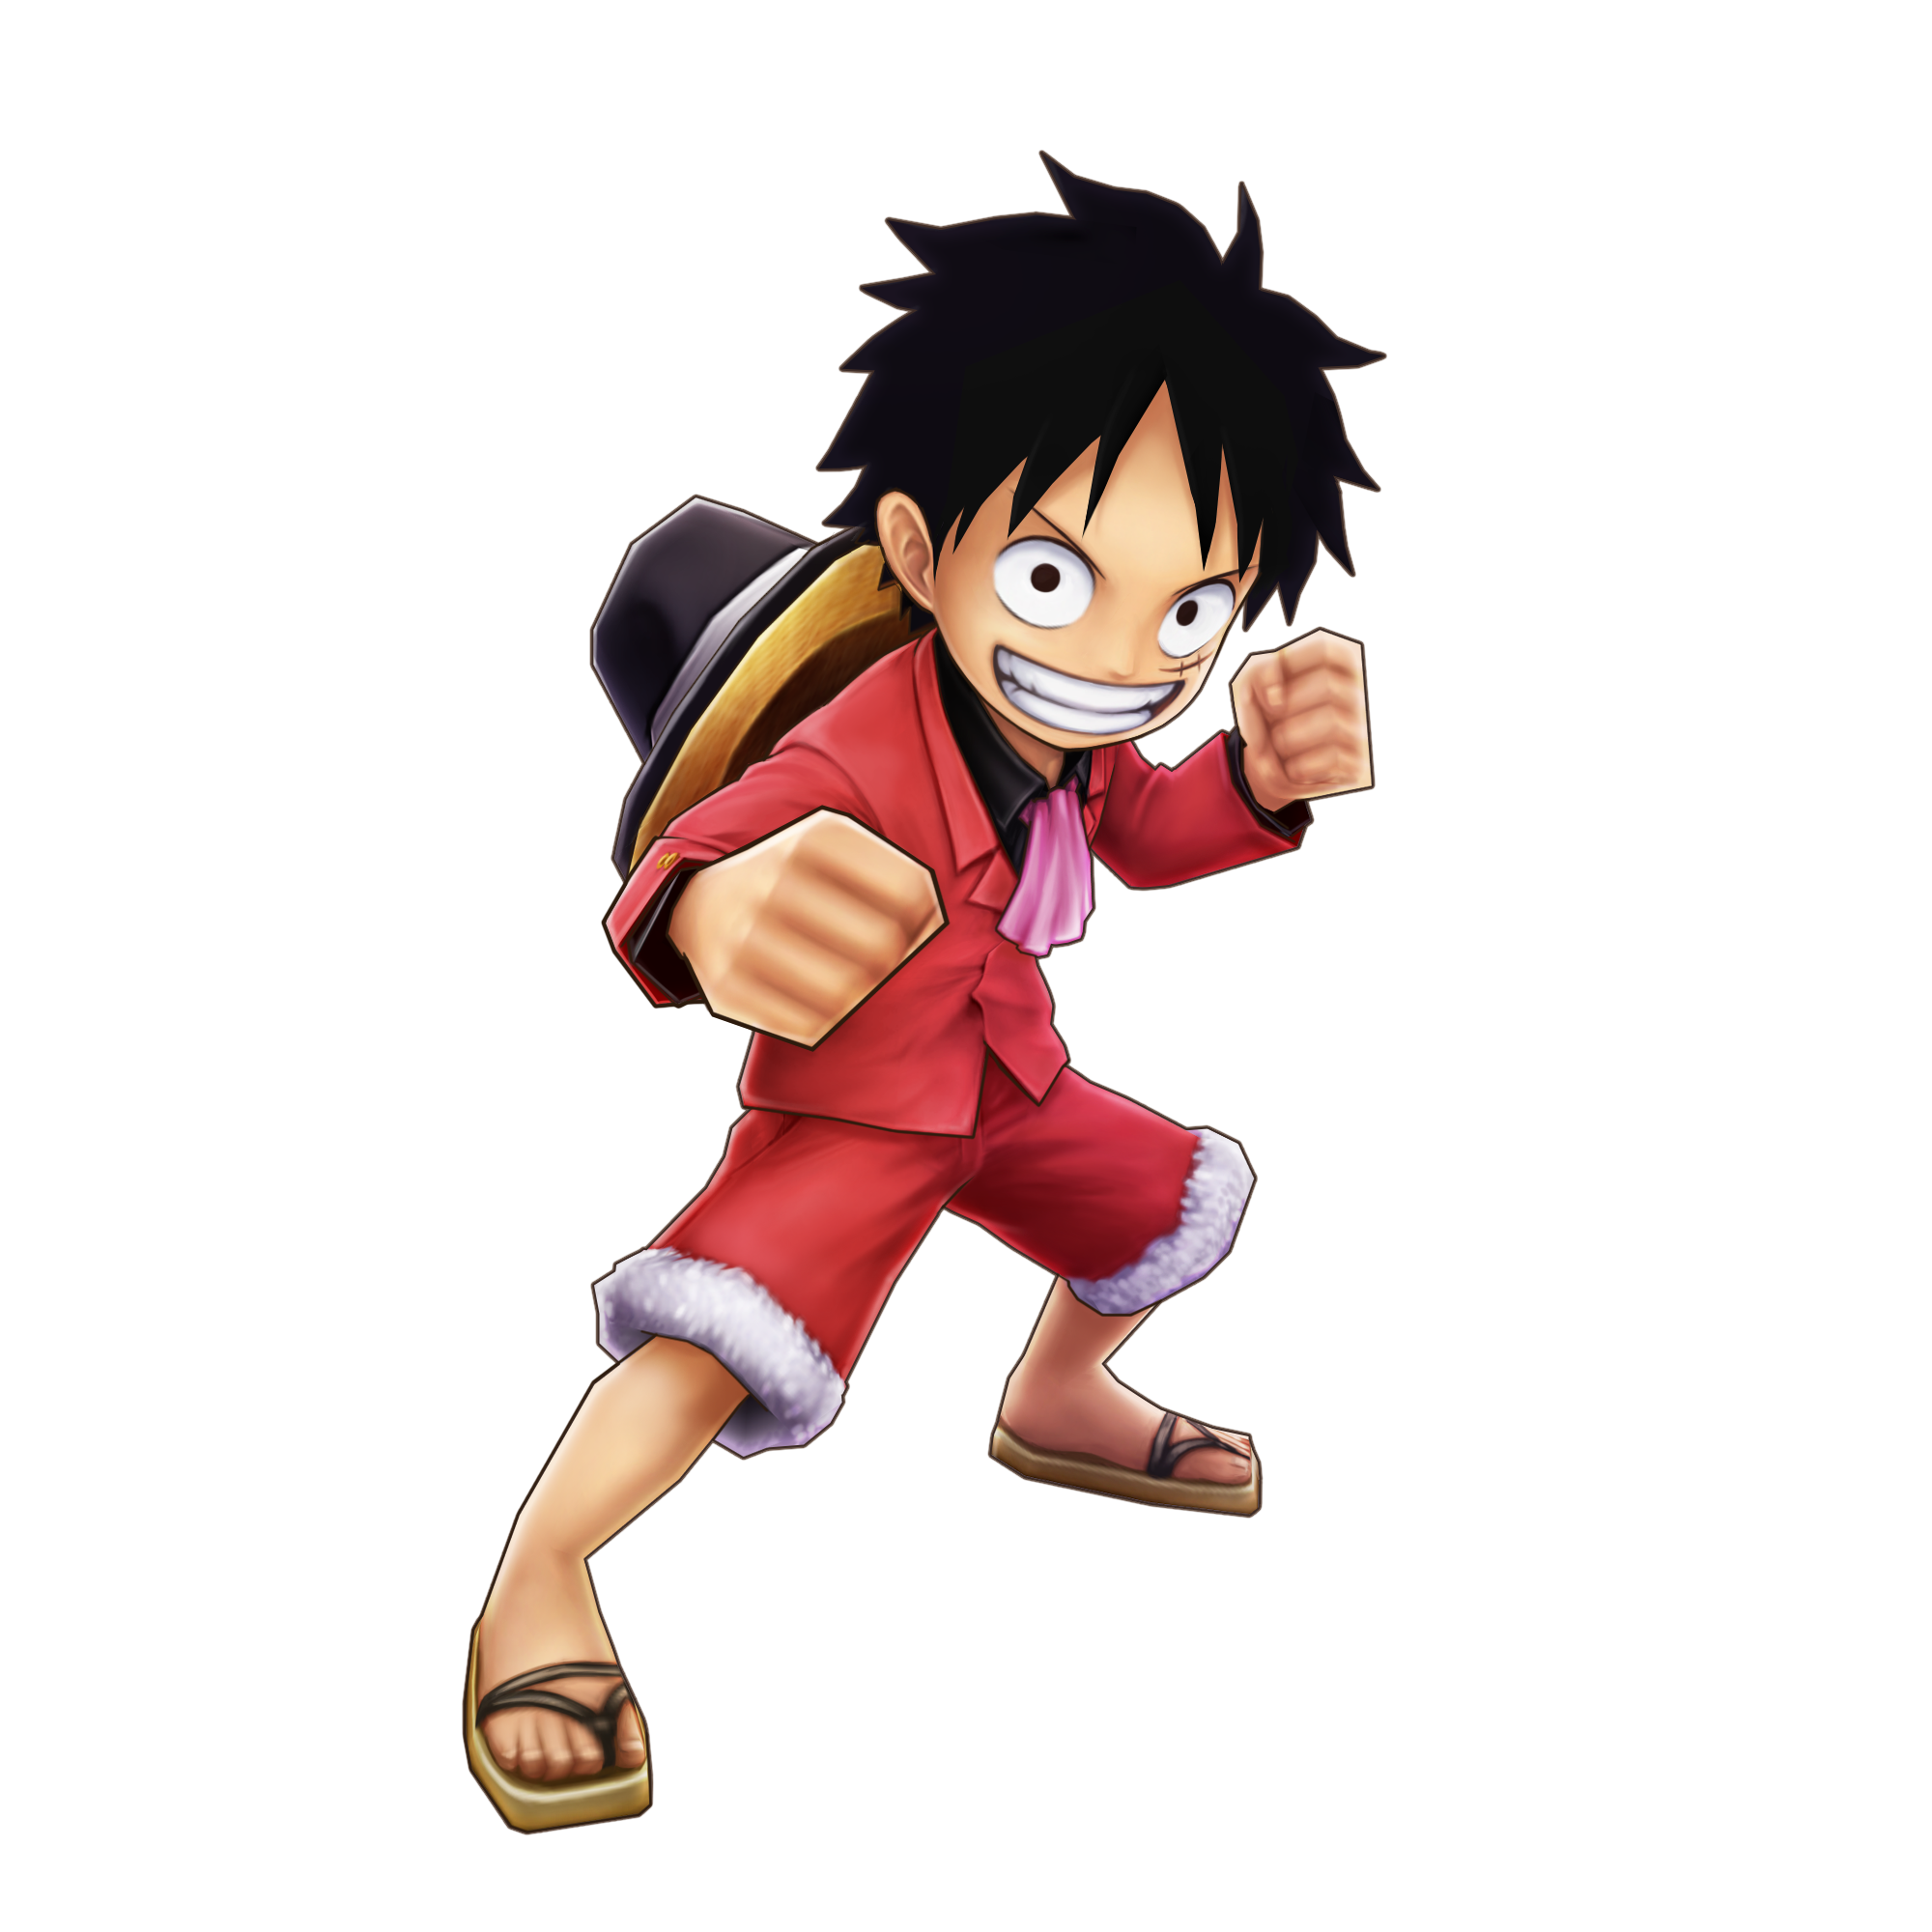 ルフィ 新世界 地獄のお茶会衣装 公式 サウスト One Piece サウザンドストーム最速攻略wiki